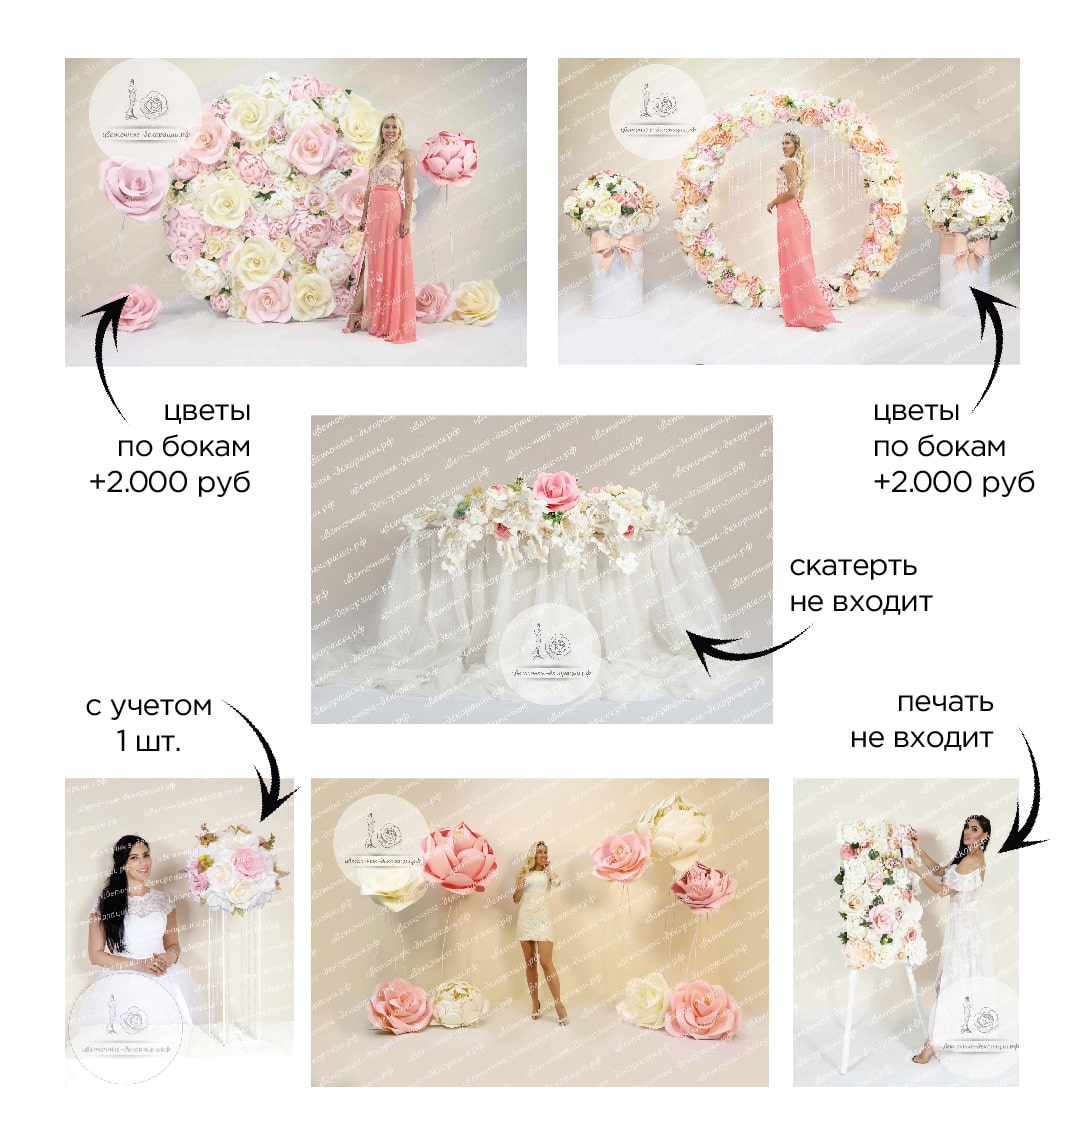 Украшение свадебного зала в розовых и белых цветах